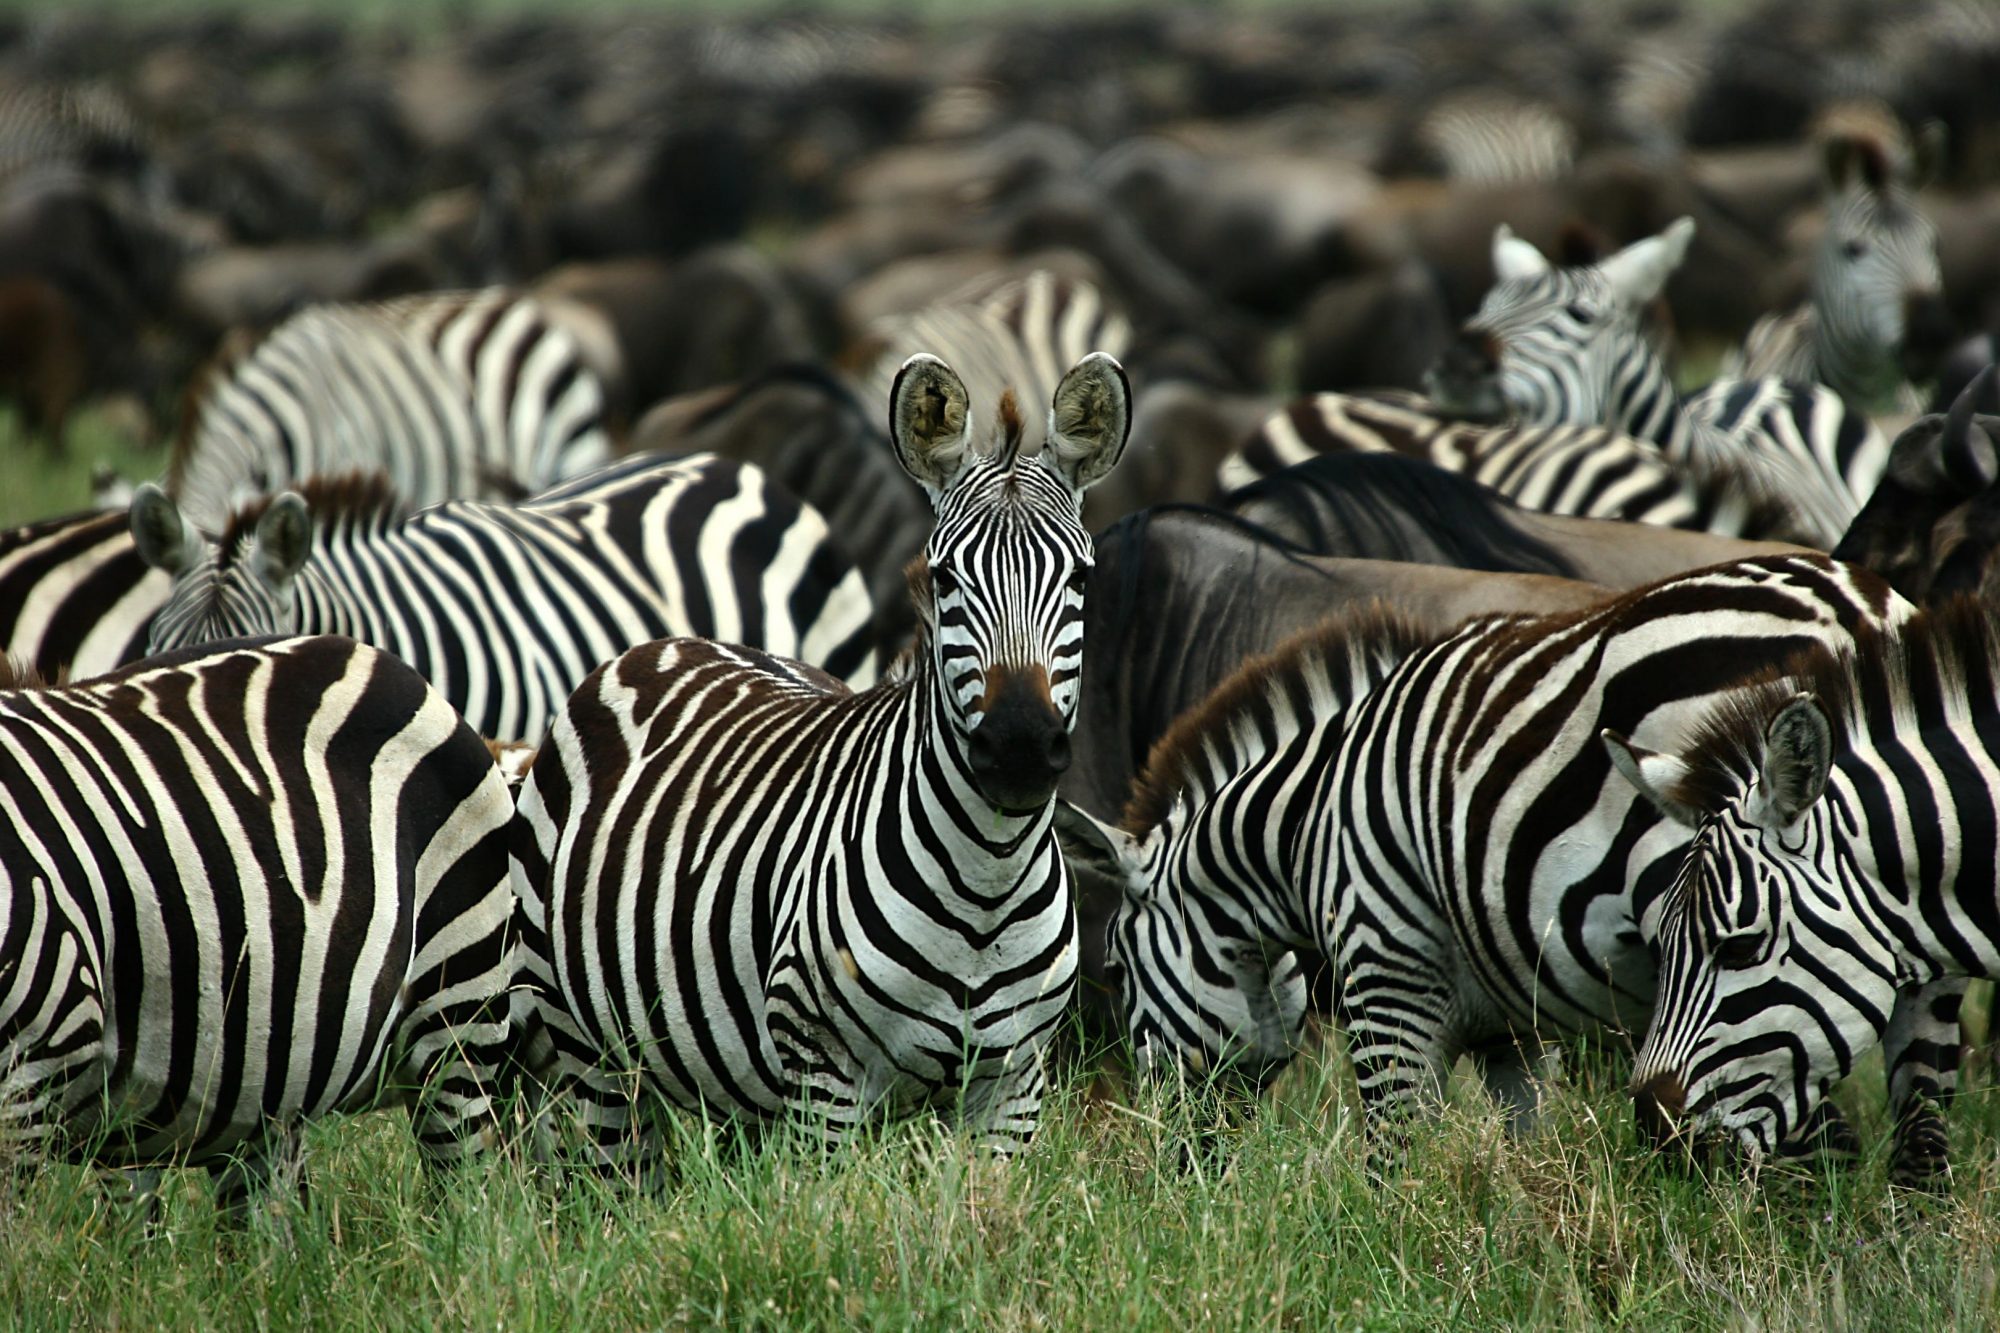 Nyasi Migrational Camp, Serengeti National Park, Tanzania